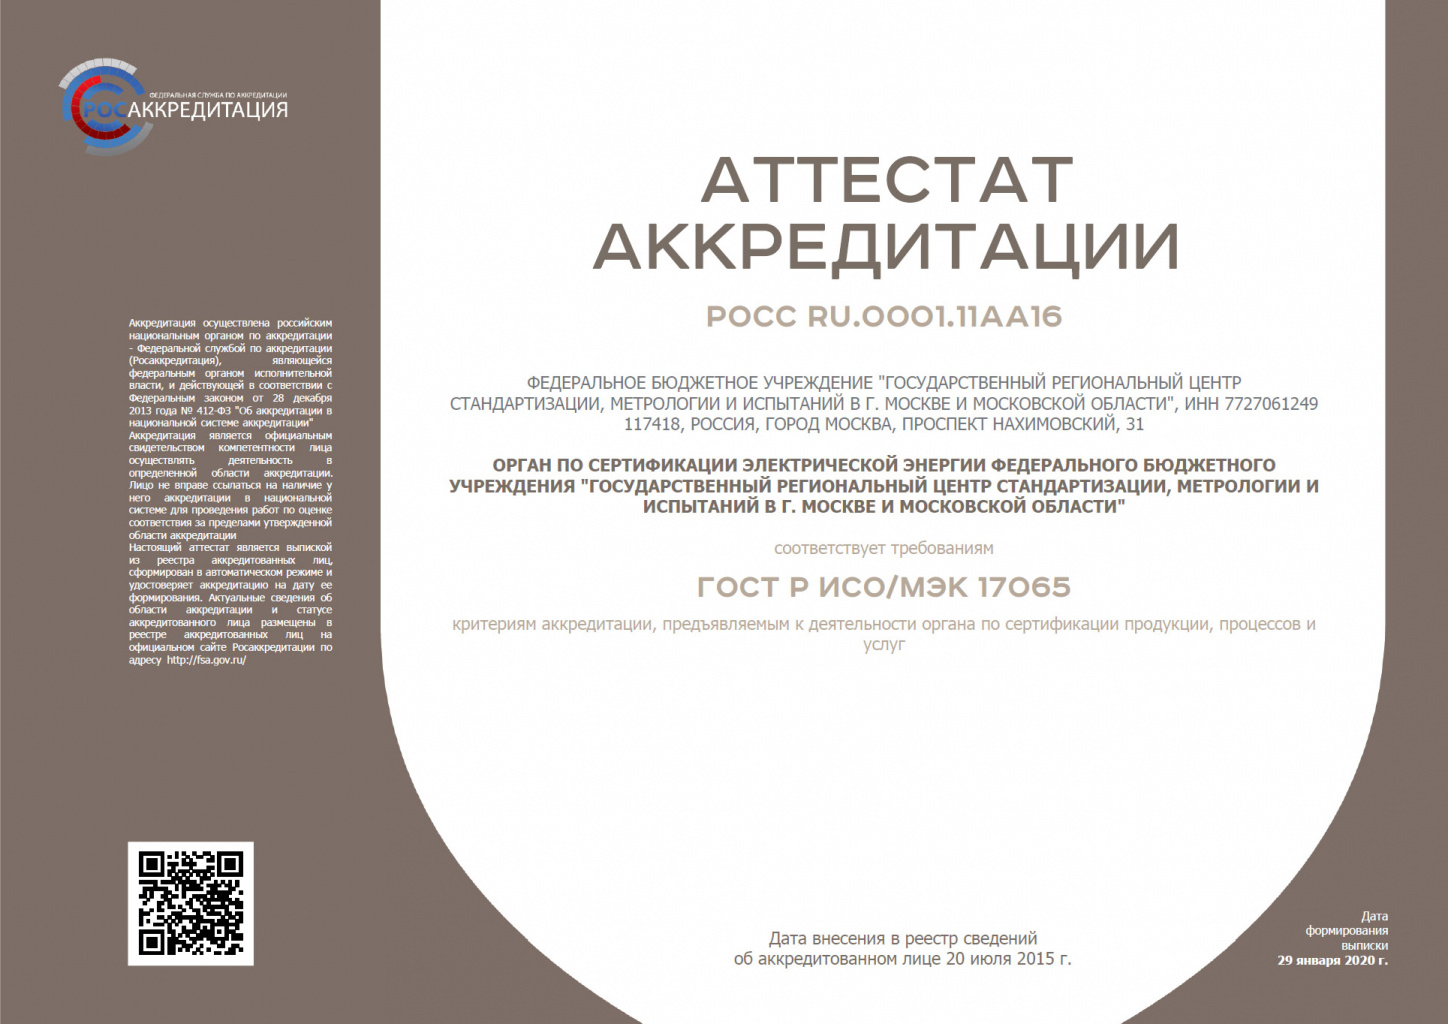 Аттестат аккредитации РОСС RU.0001.11АА16 органа по сертификации электрической энергии